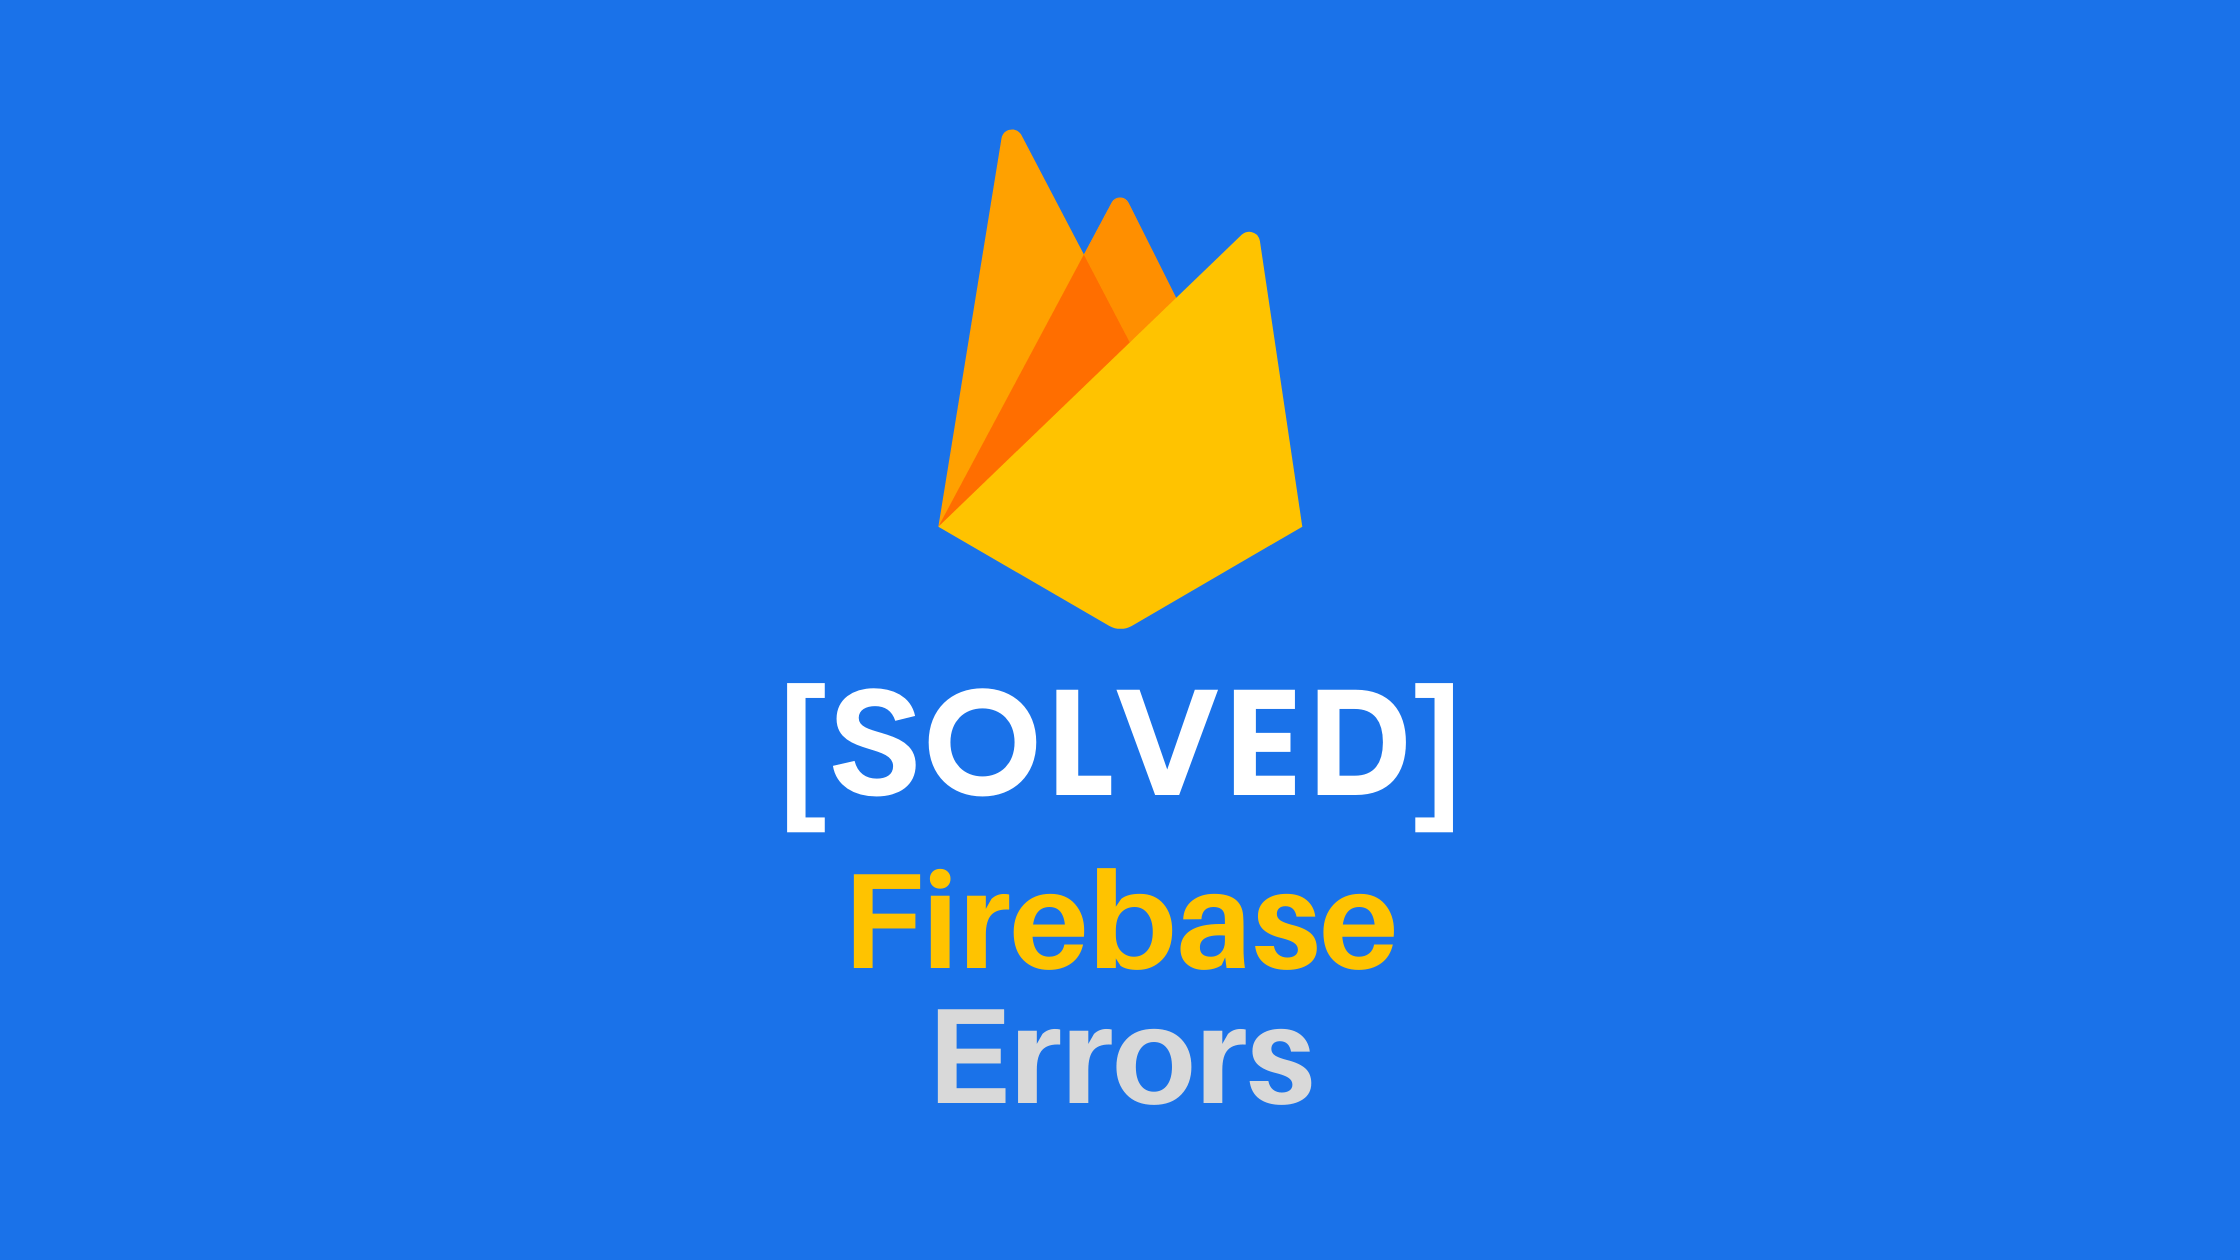 Solved Firebase Errors - CodeROG